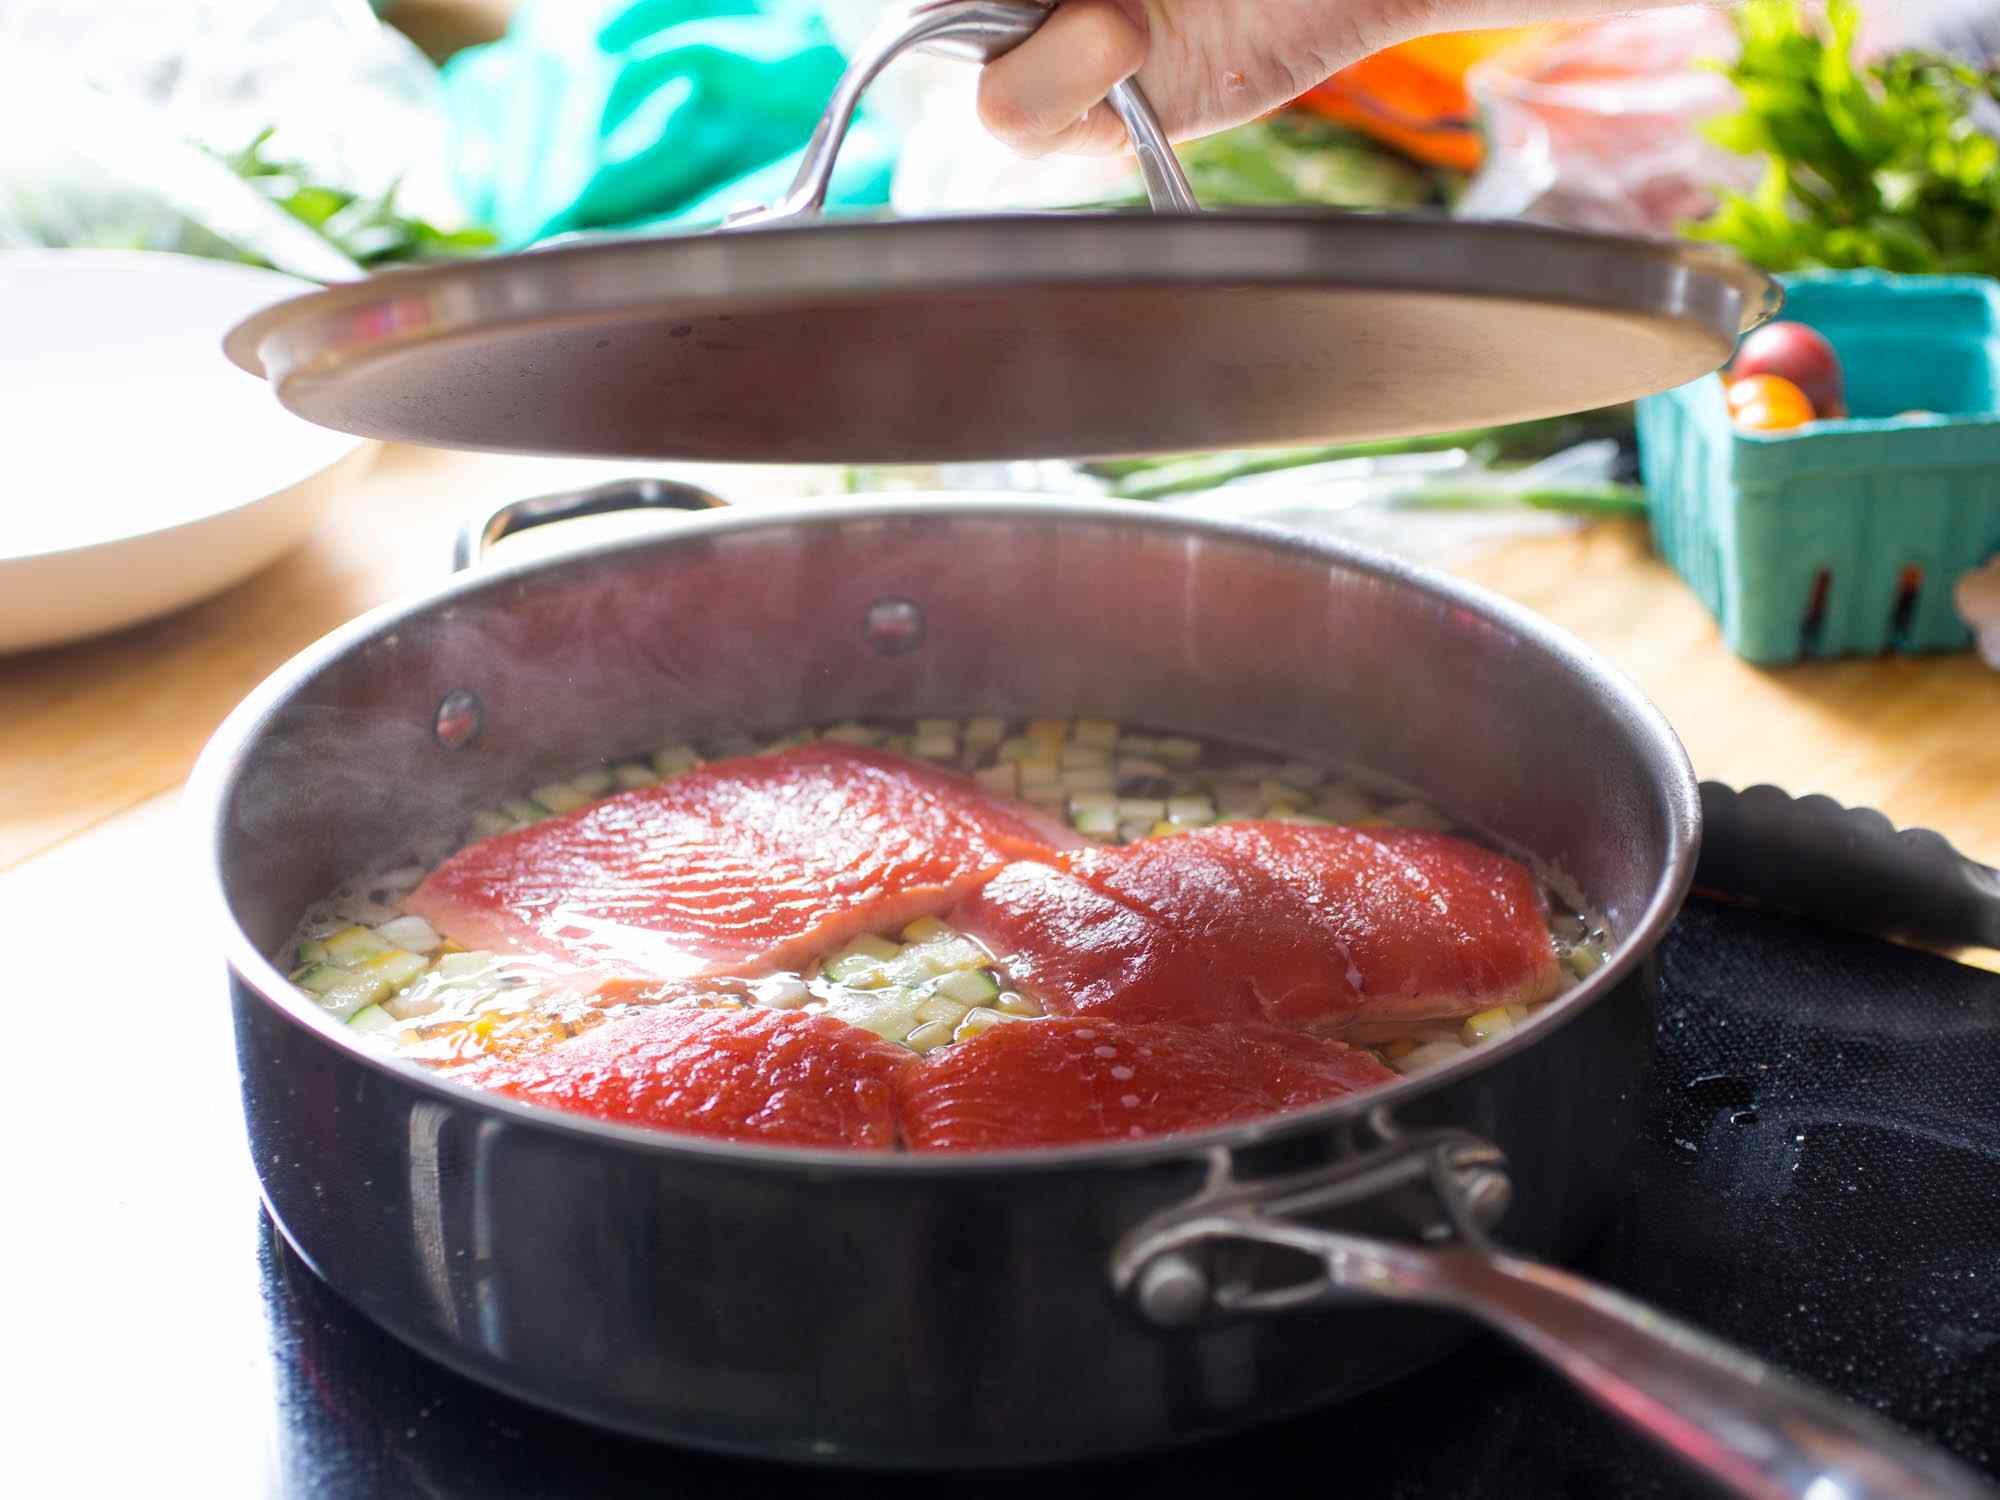 四块三文鱼片放在深边煎锅里慢慢地煎着。